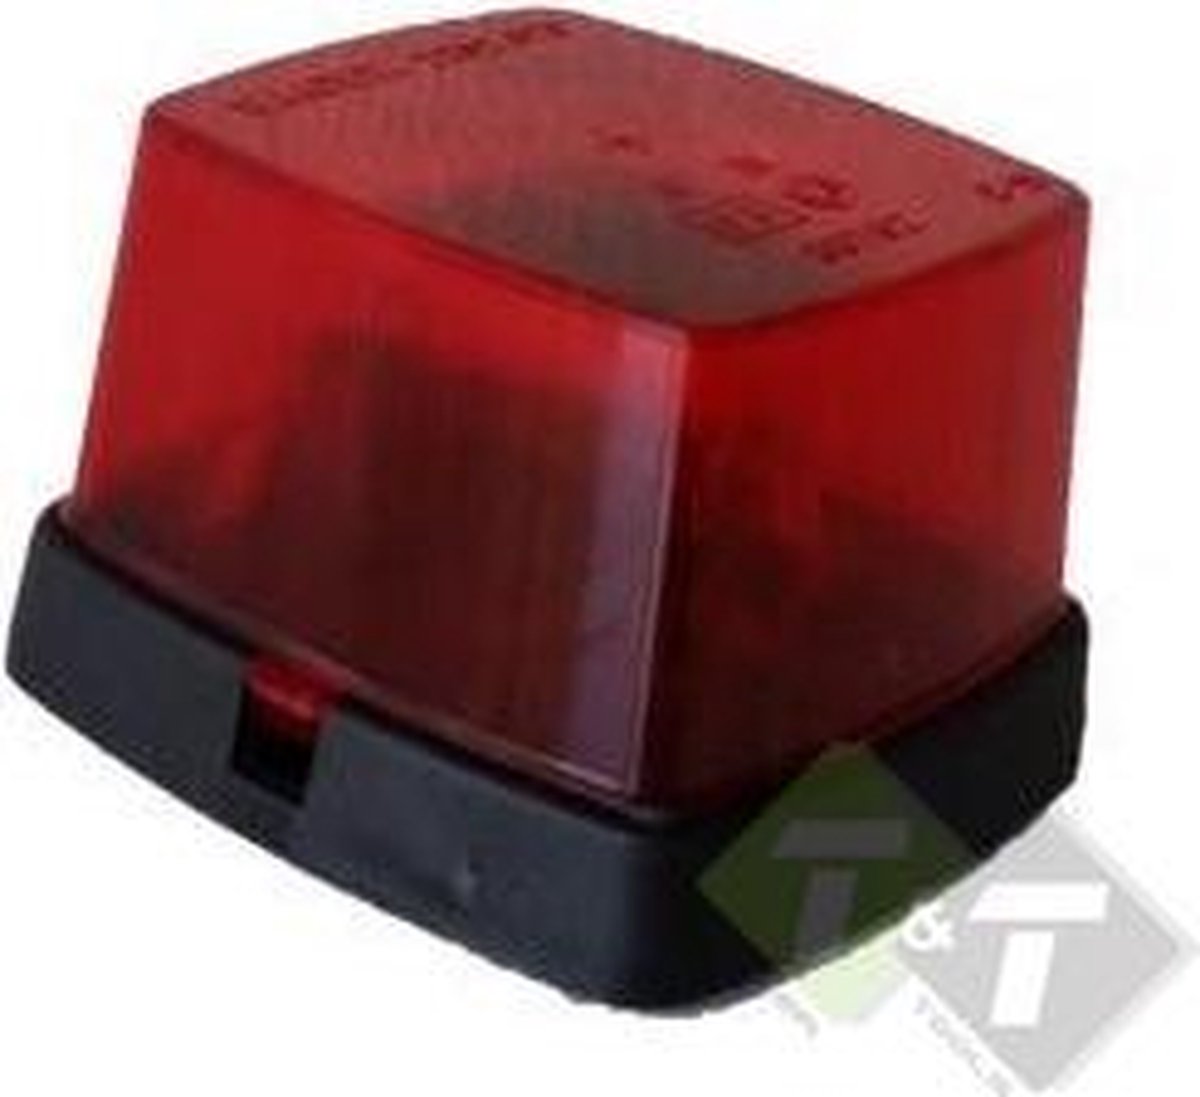 Zijmarkeringslamp, Contourlamp rood, 62mm x 66mm, E3 gekeurd